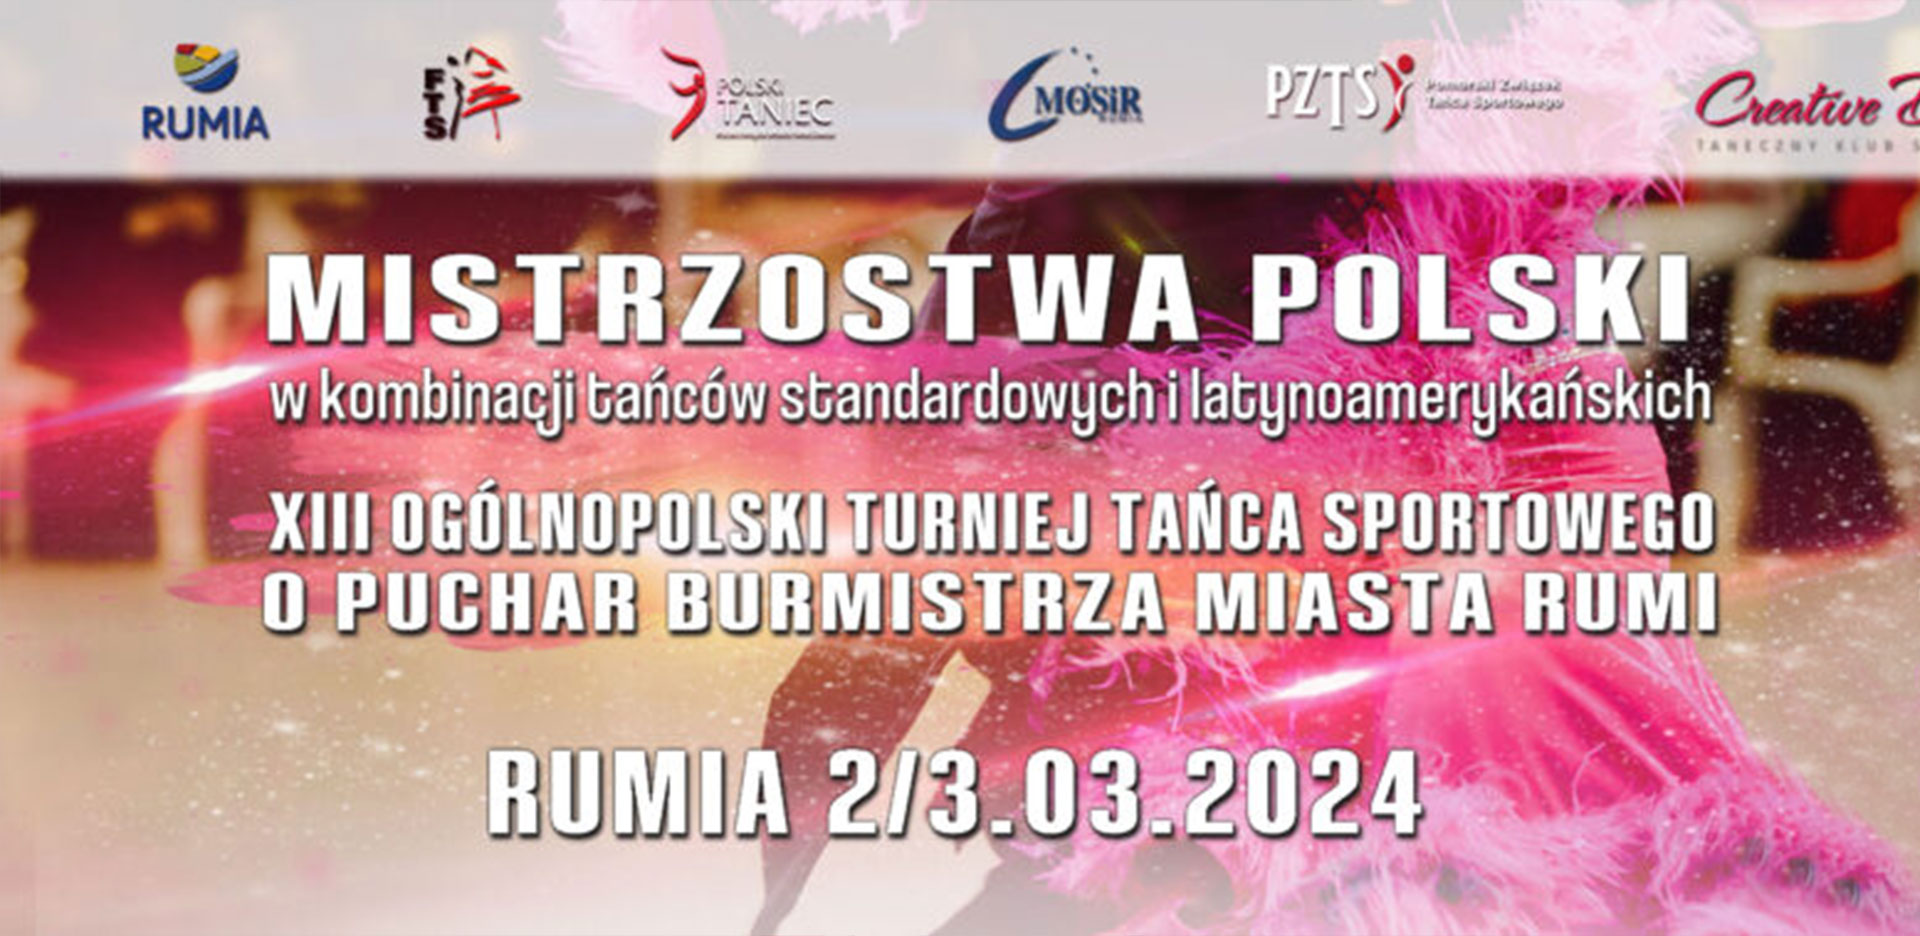 MISTRZOSTWA POLSKI oraz XIII Ogólnopolski Turniej Tańca Sportowego w Rumi